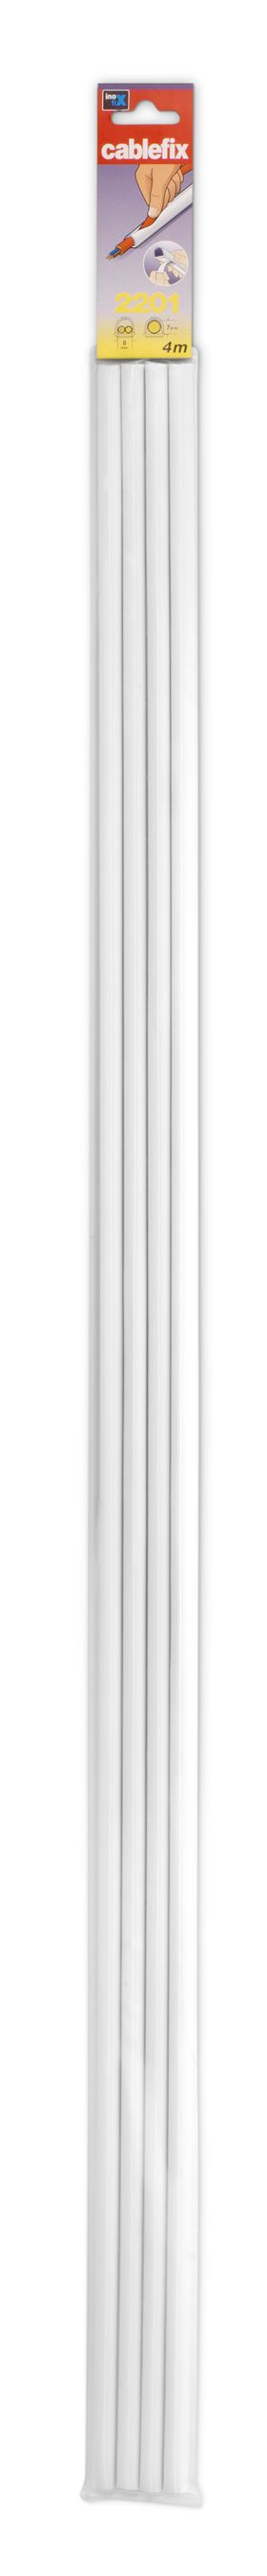 Goulotte 7mm blanc auto-adhésif 1m 4 pcs.